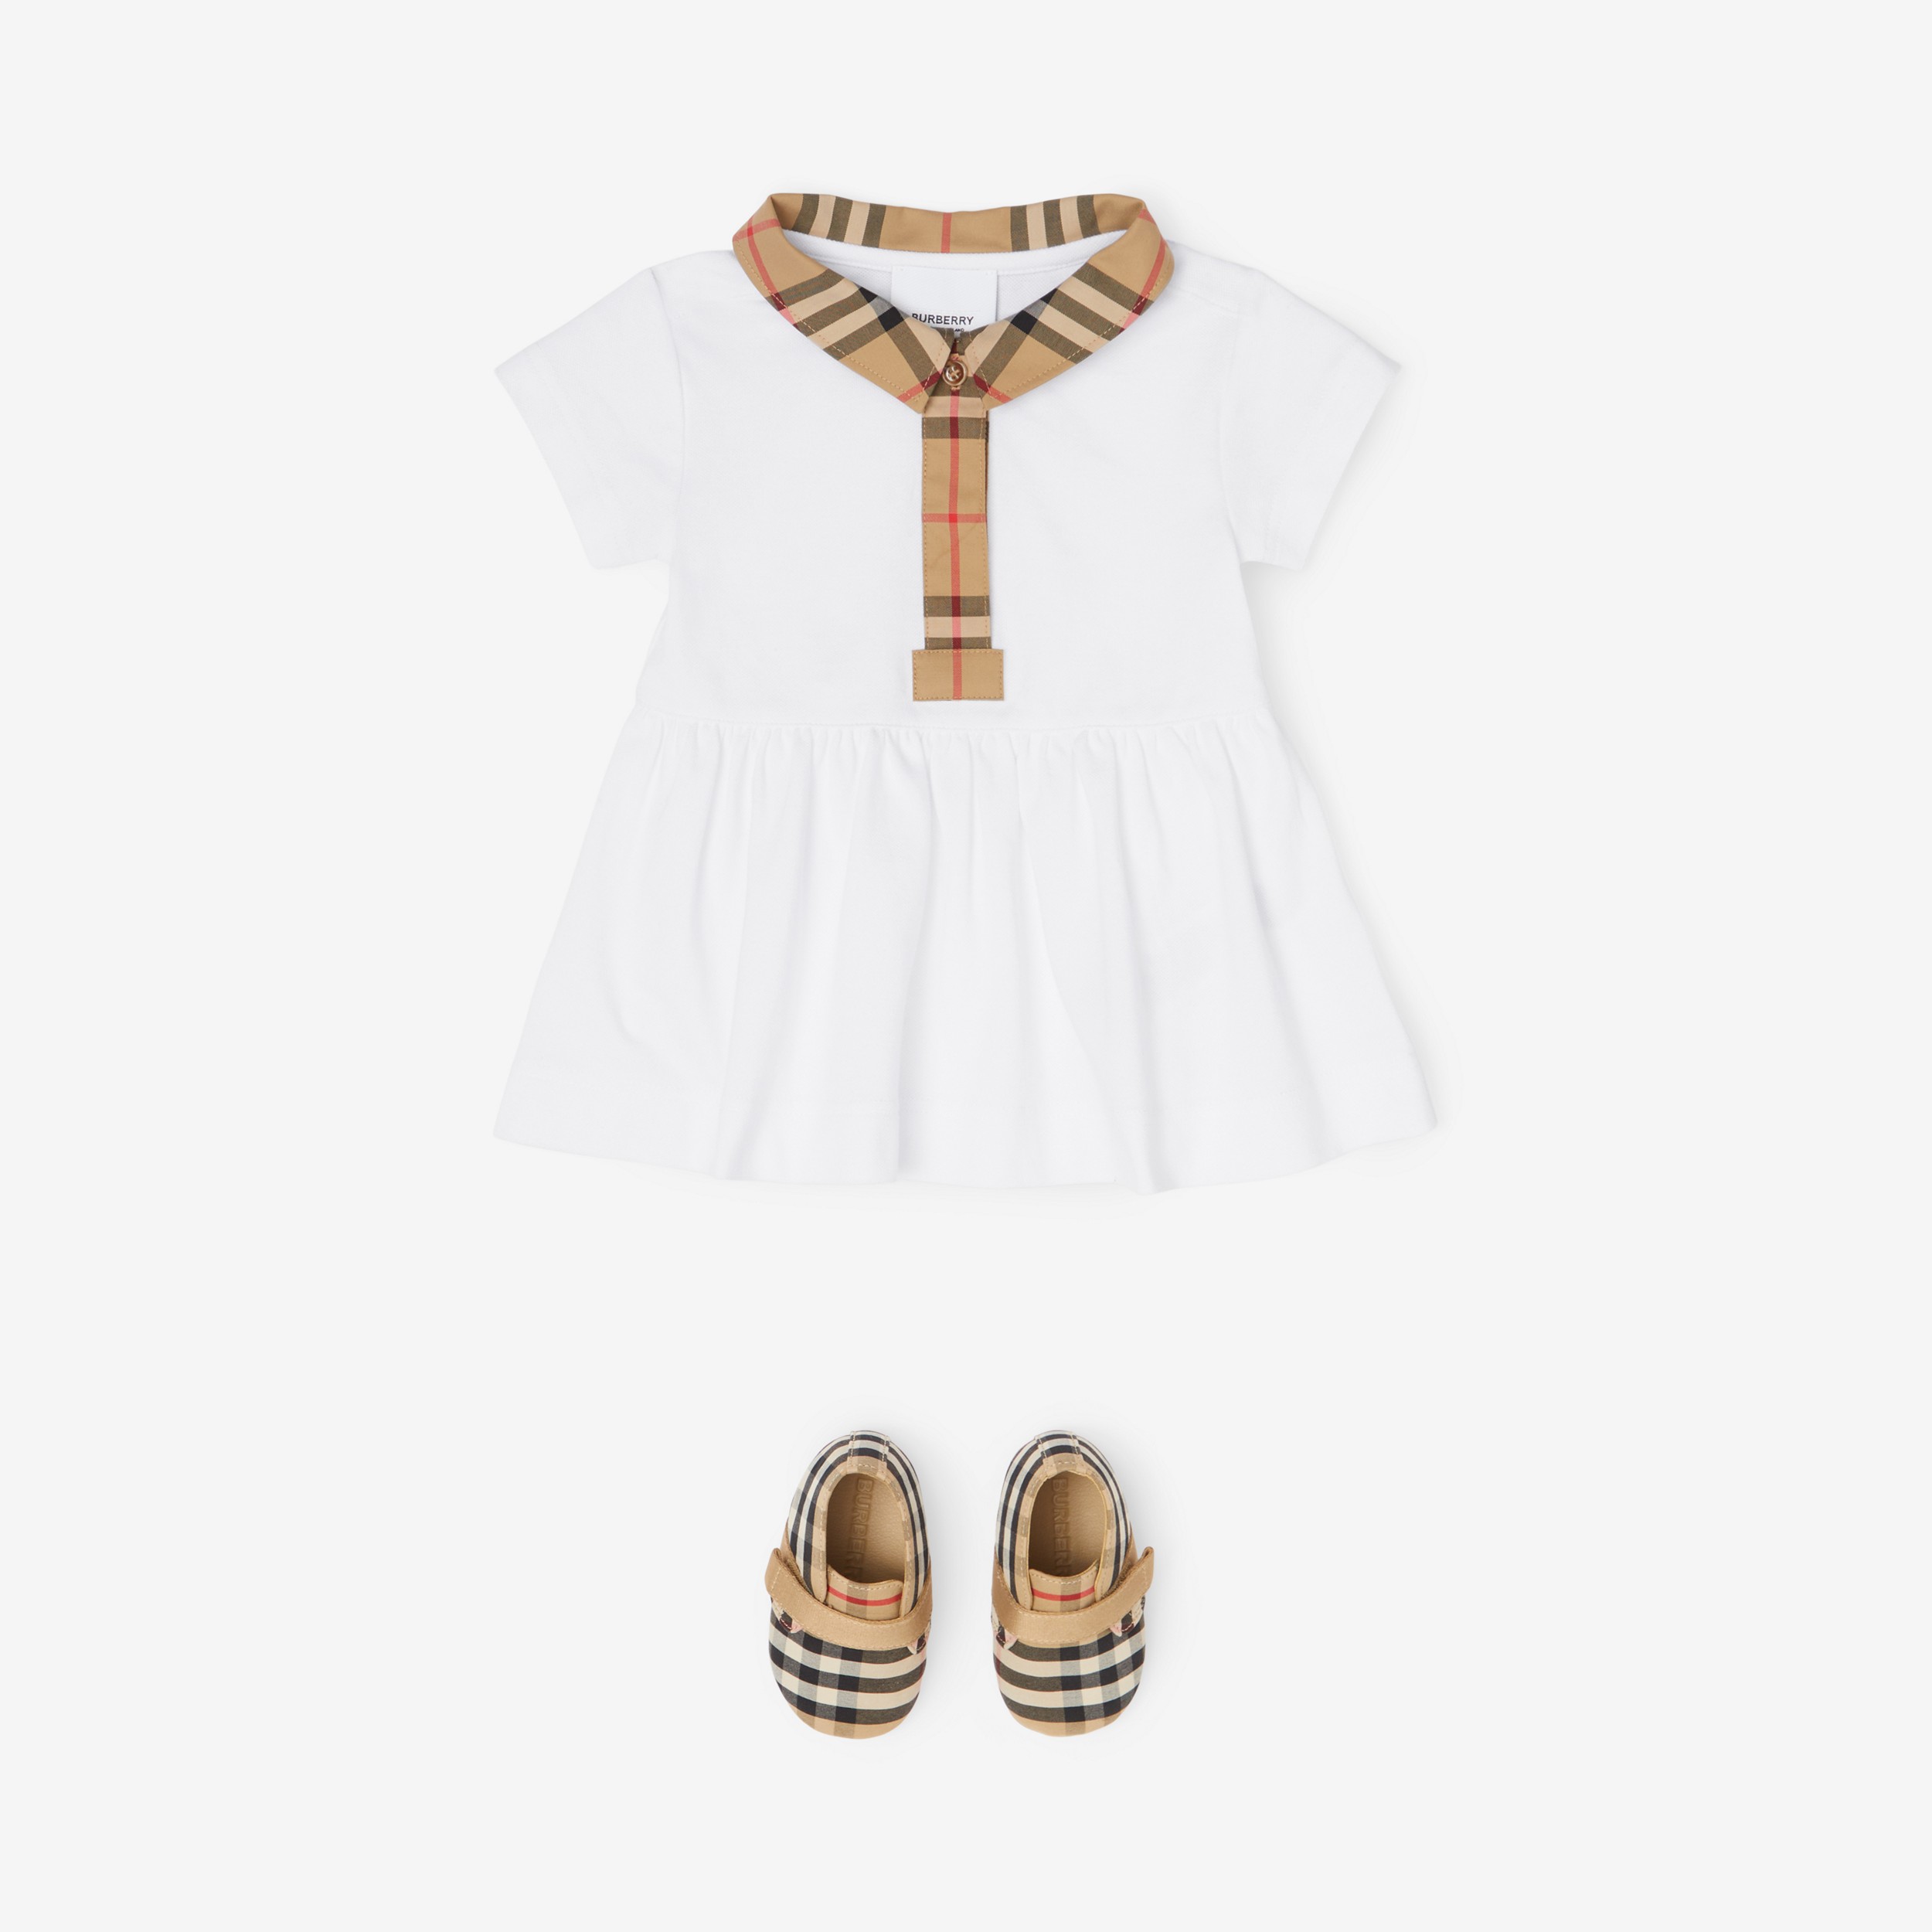 Stretchbaumwollpiqué-Kleid mit Karobesatz und Höschen (Weiß) - Kinder | Burberry® - 3